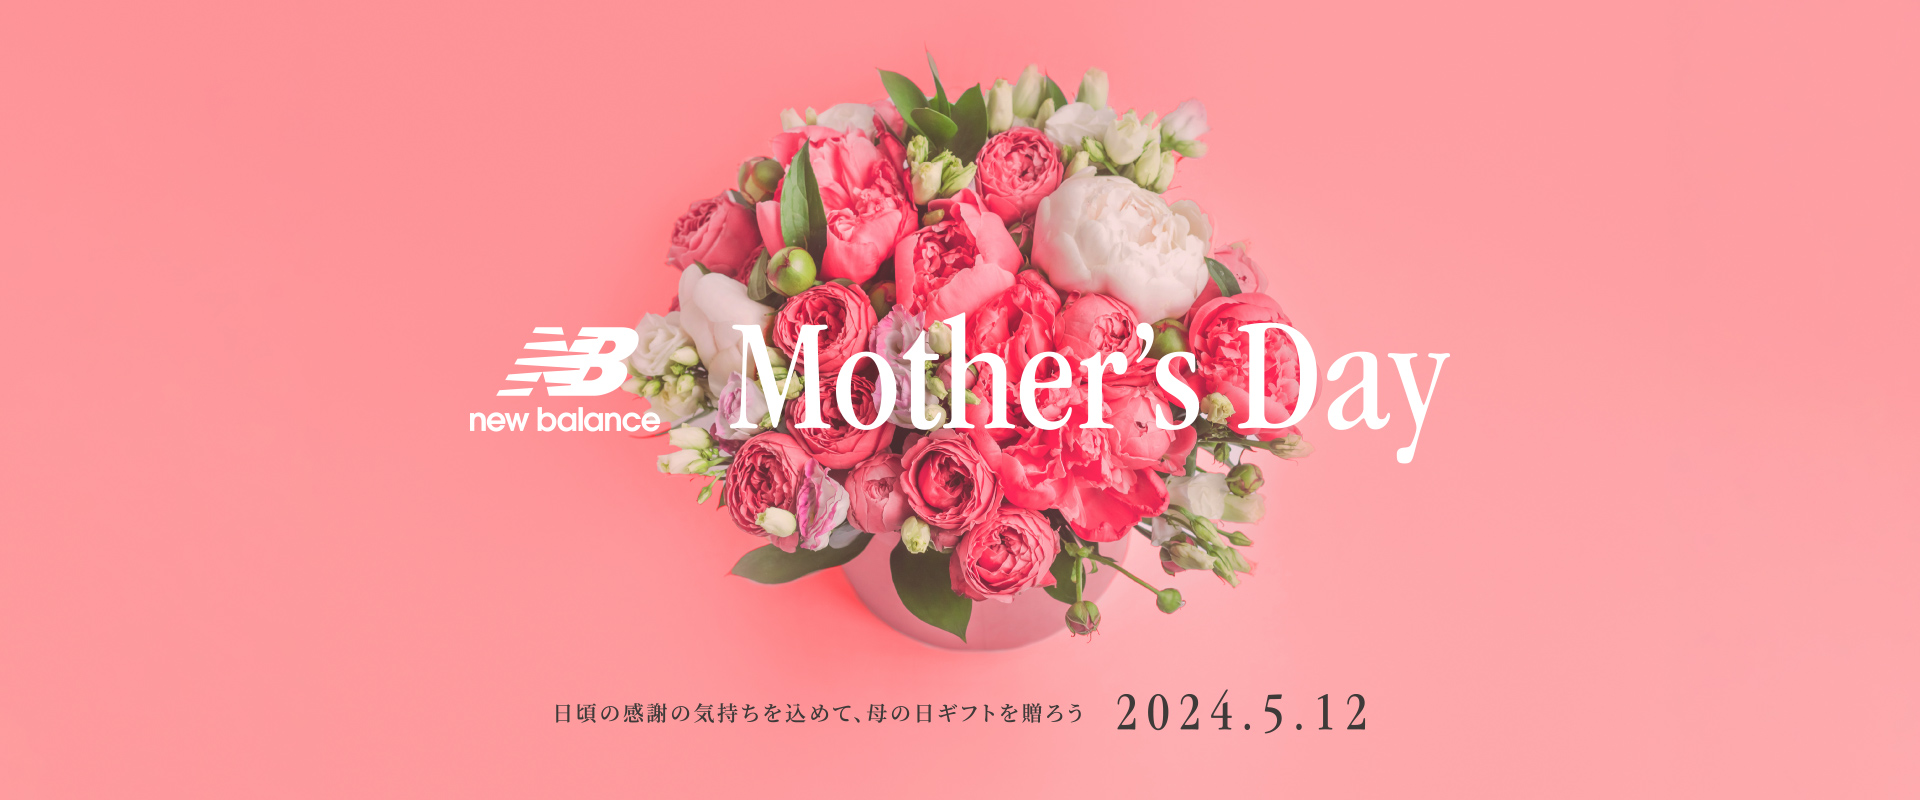 日頃の感謝の気持ちを込めて、母の日ギフトを贈ろう。Mother's Day 2022年5月8日